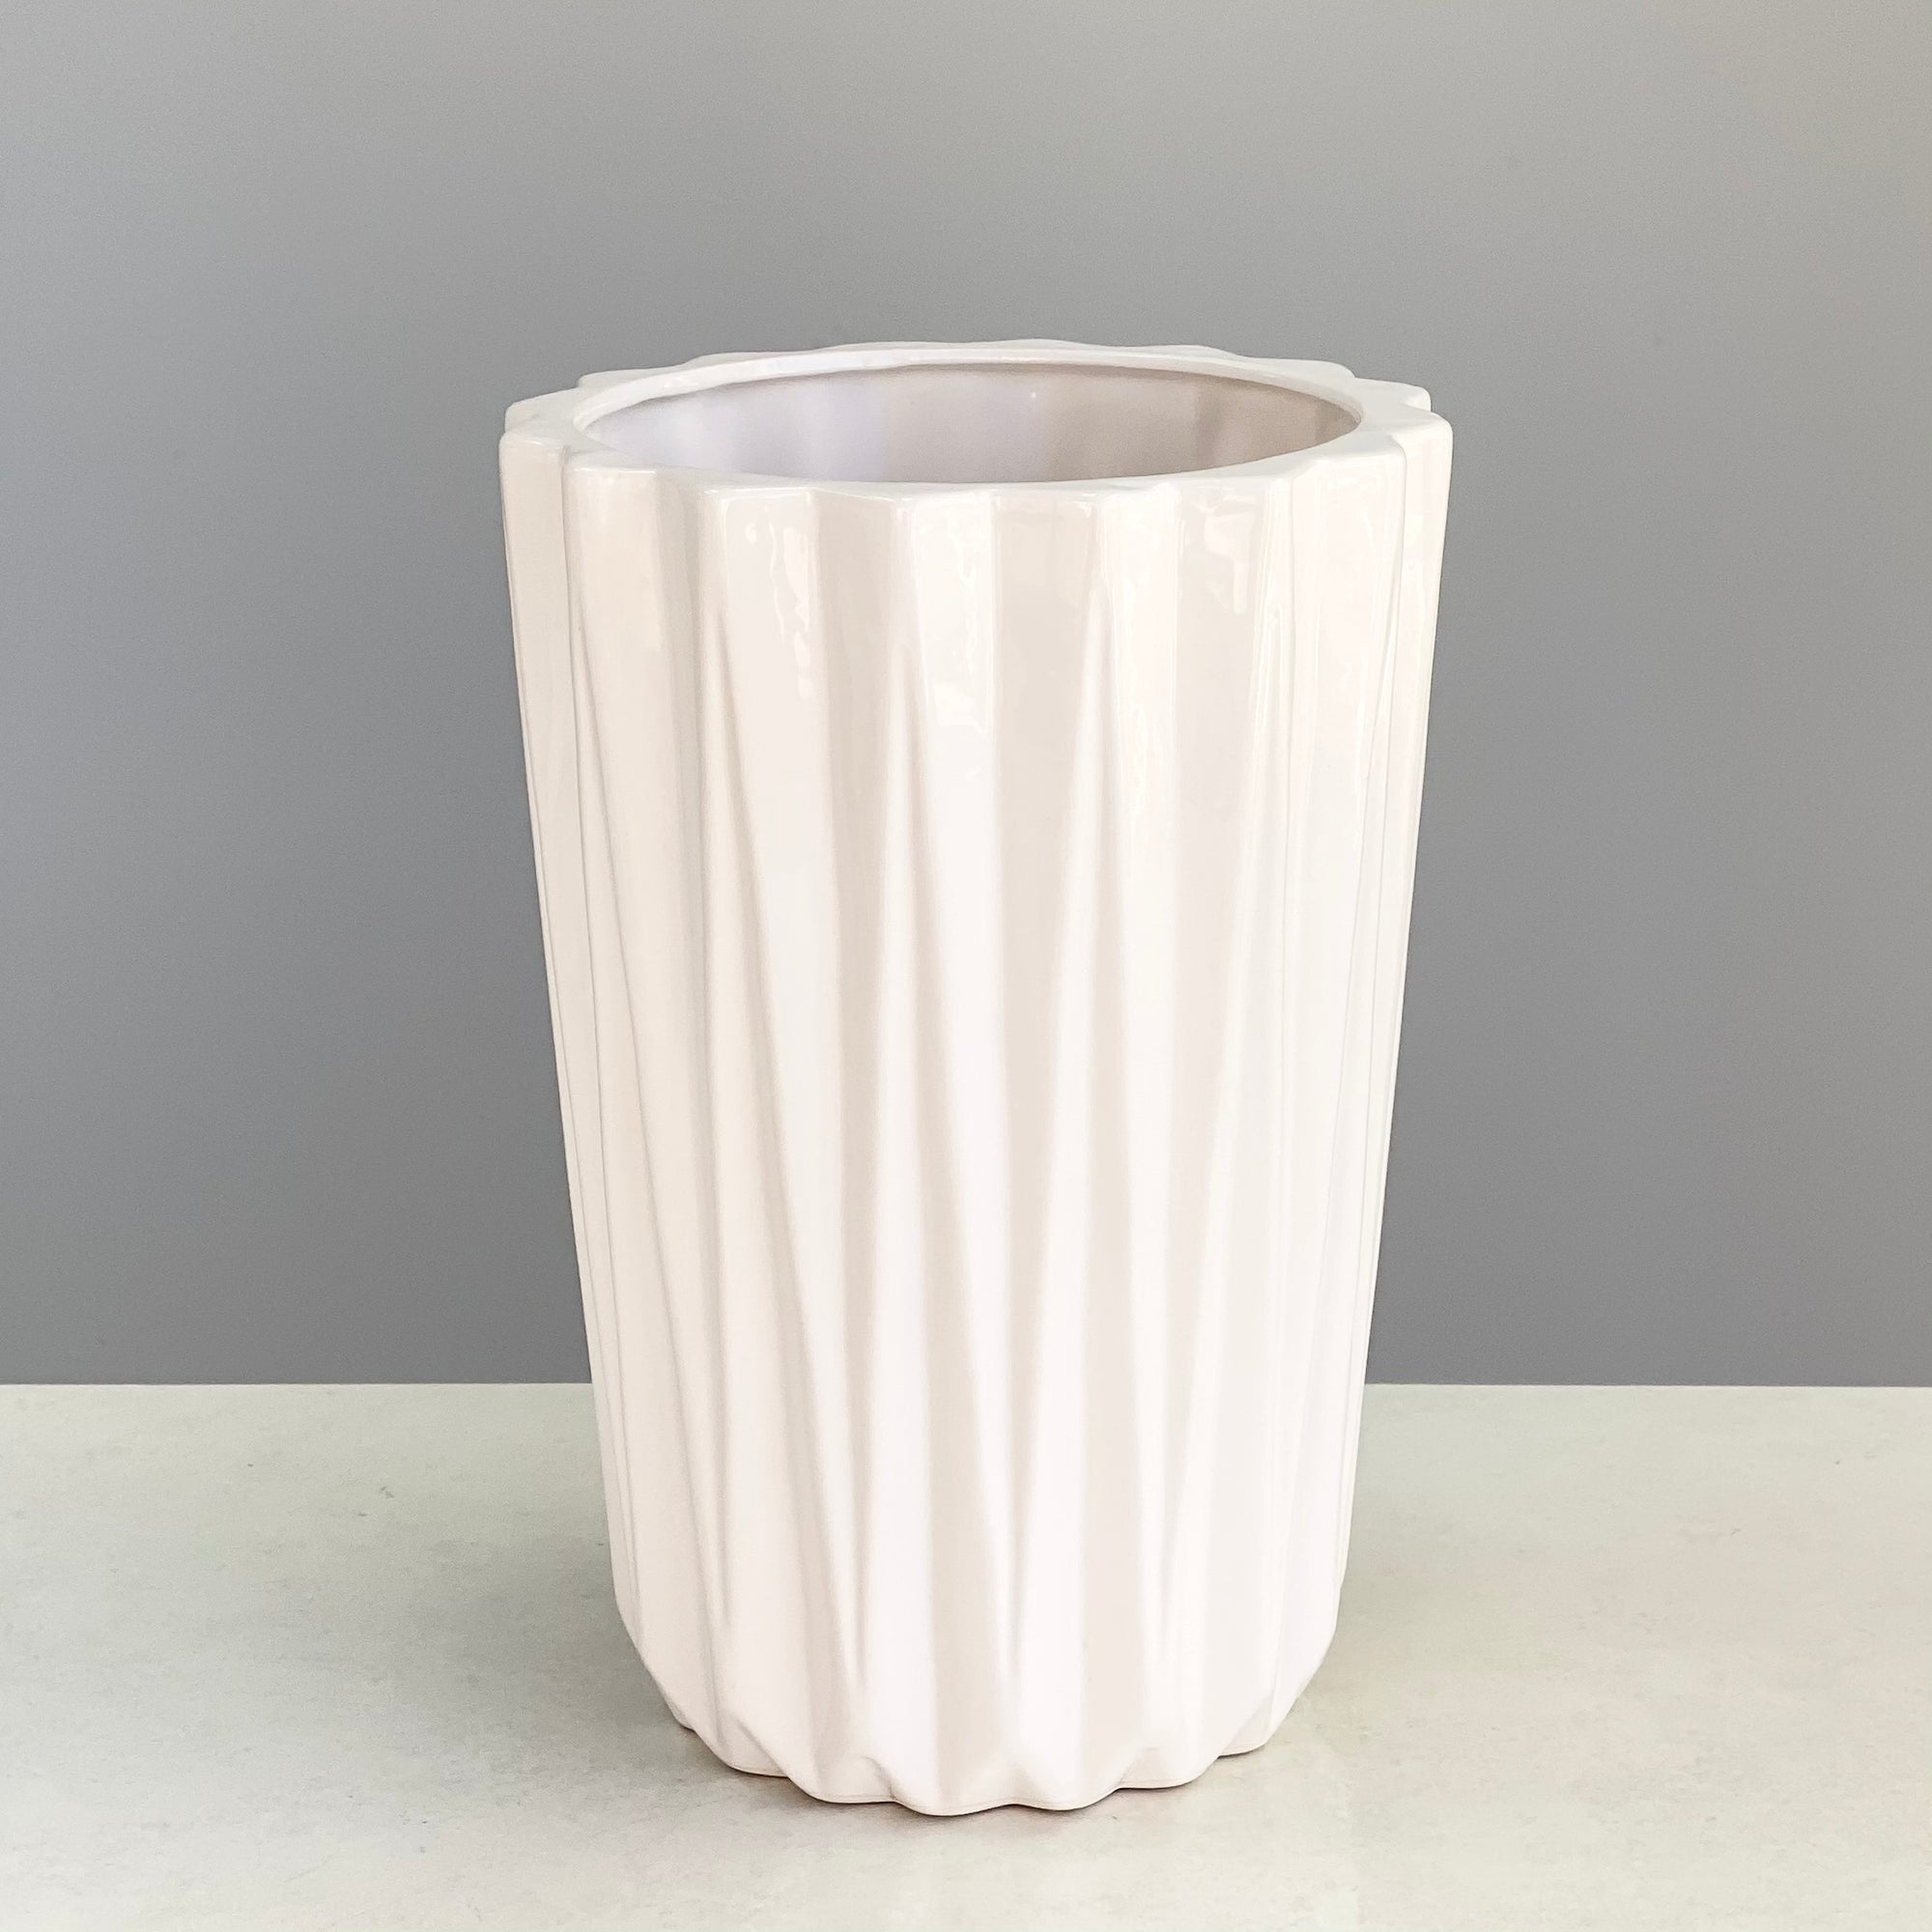 Porcelain Flower Vase White Large